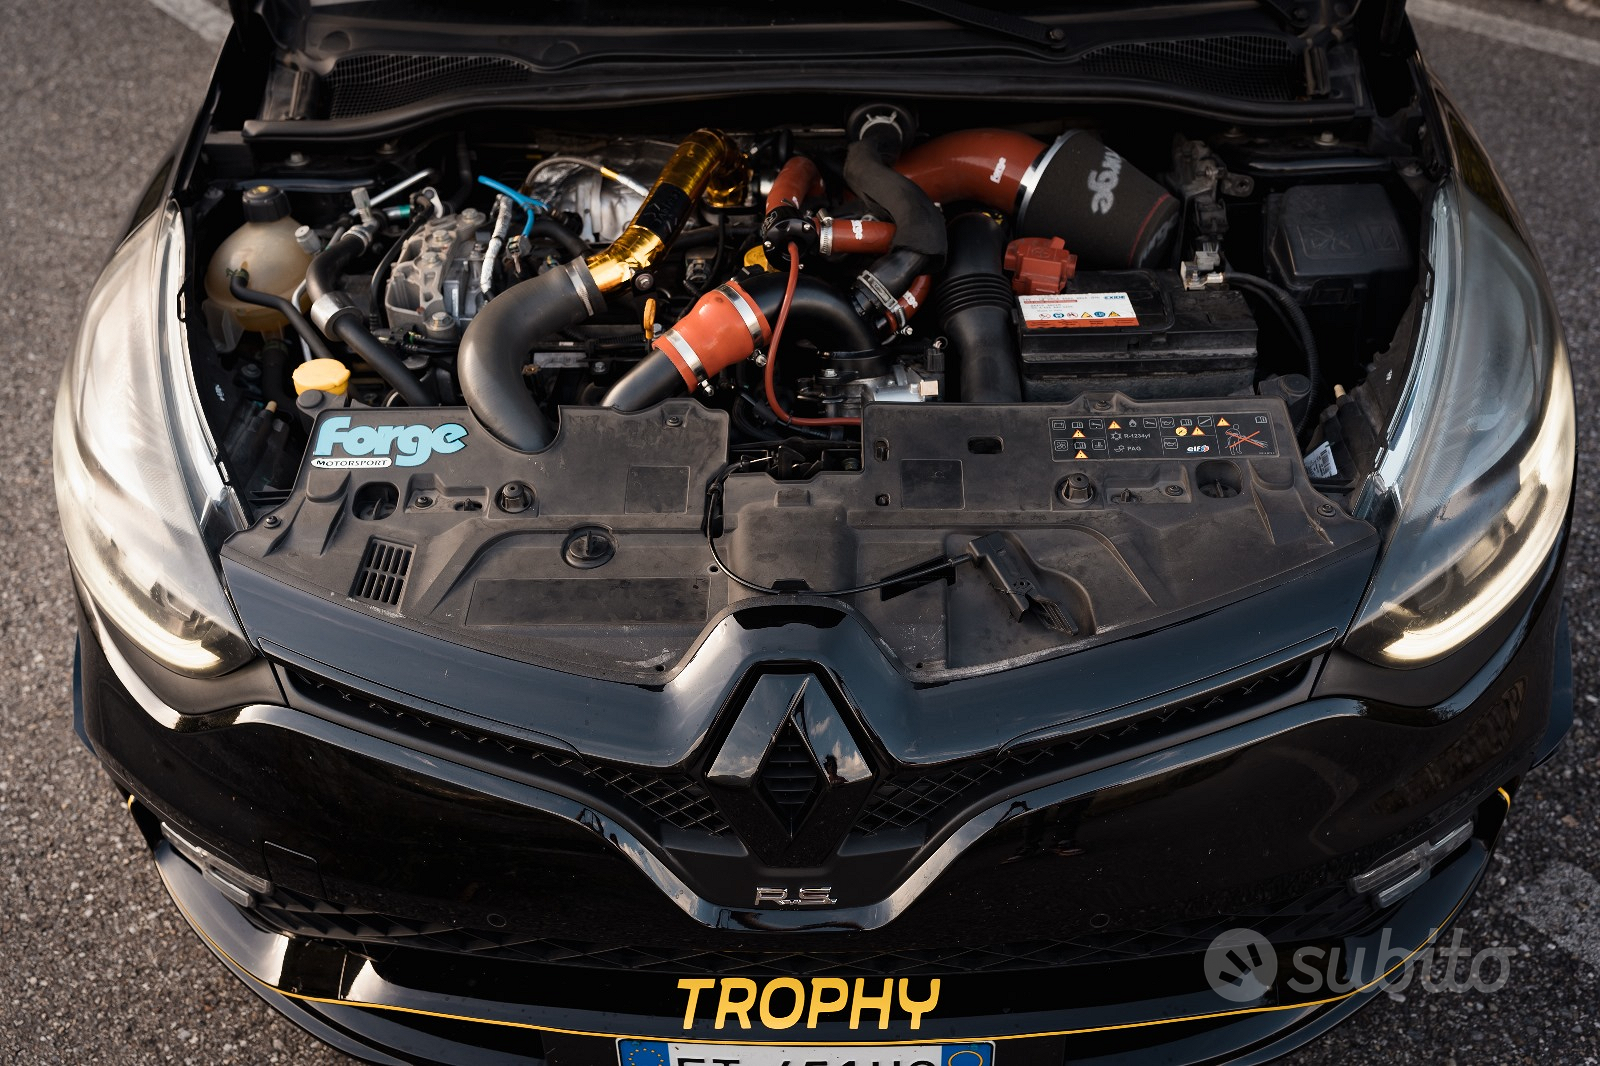 Renault clio 4 rs trophy - Auto In vendita a Brescia